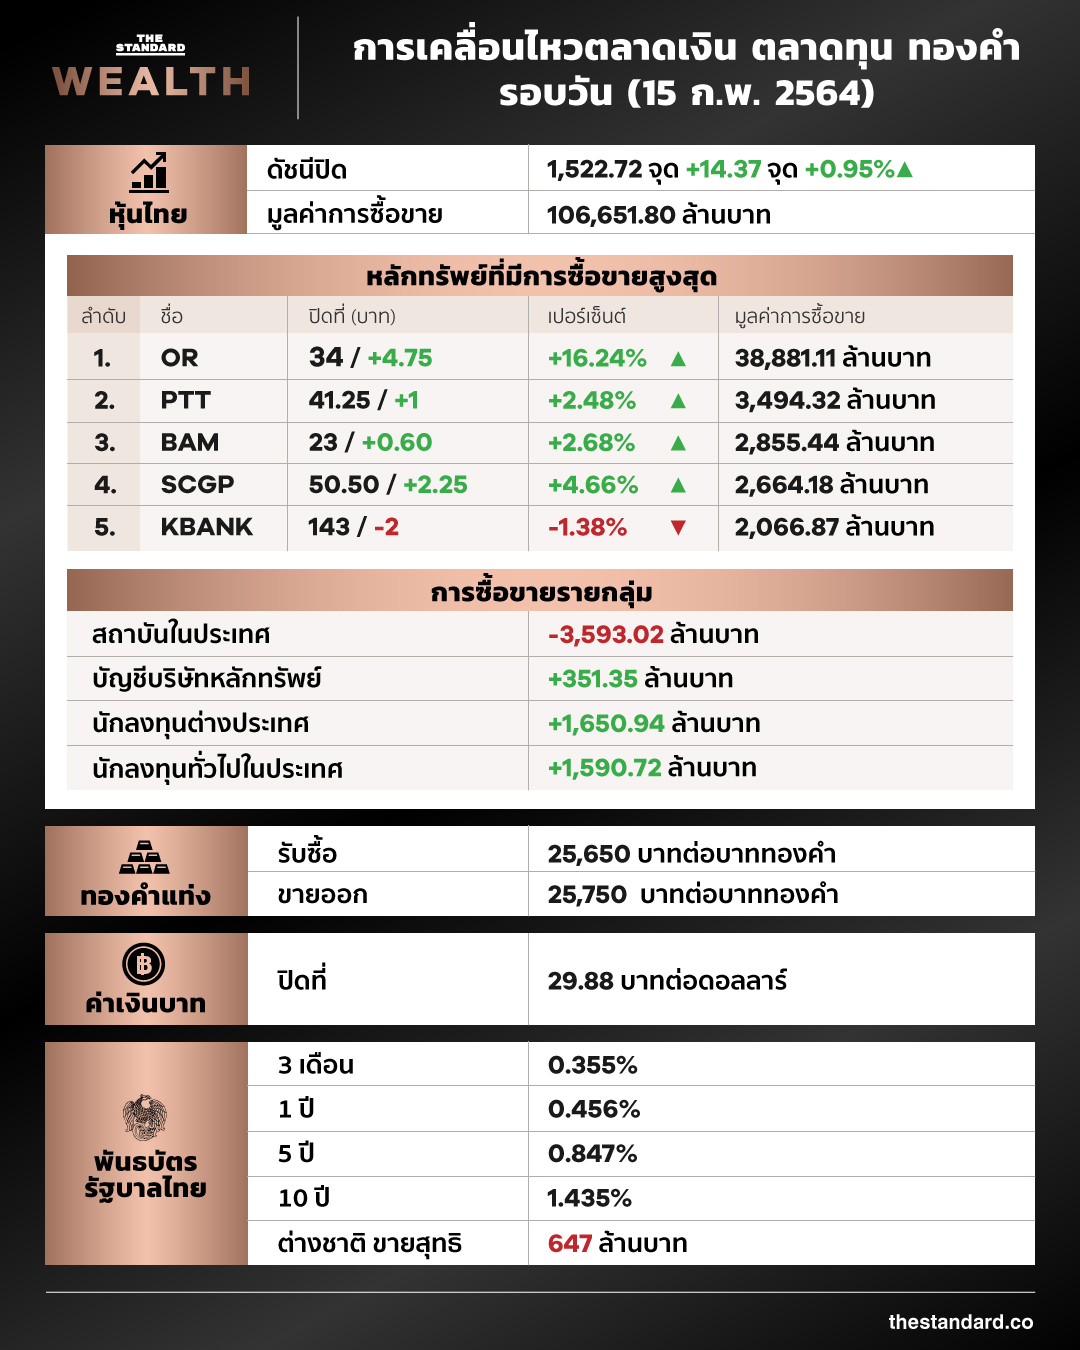 คลาดหุ้นไทย วันนี้ infographic